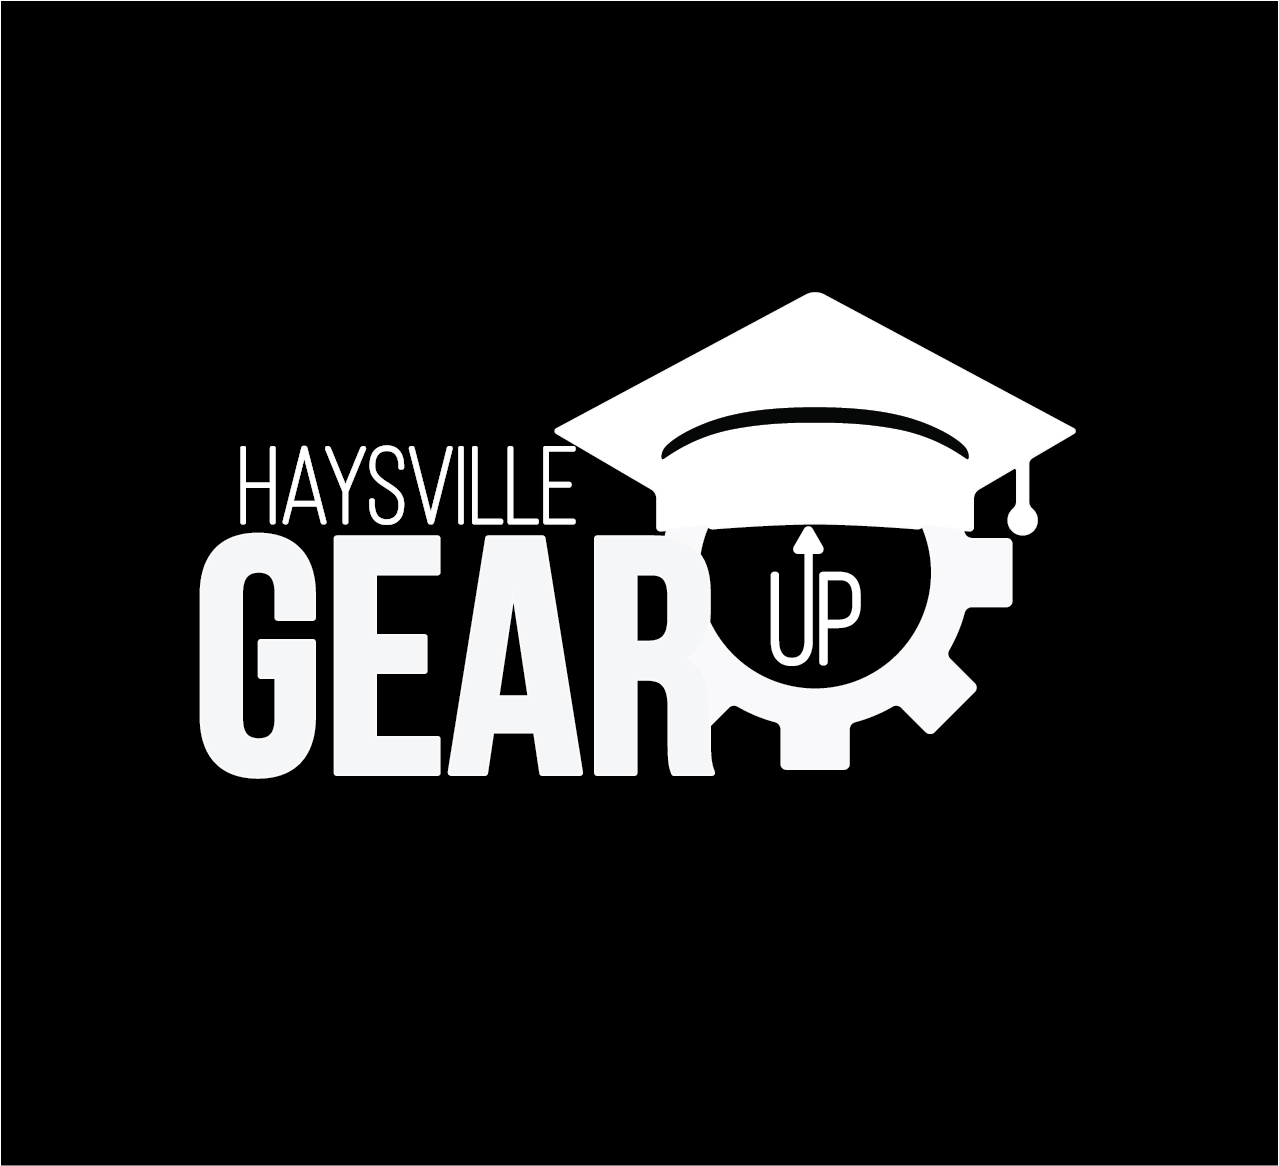 Haysville GEAR UP